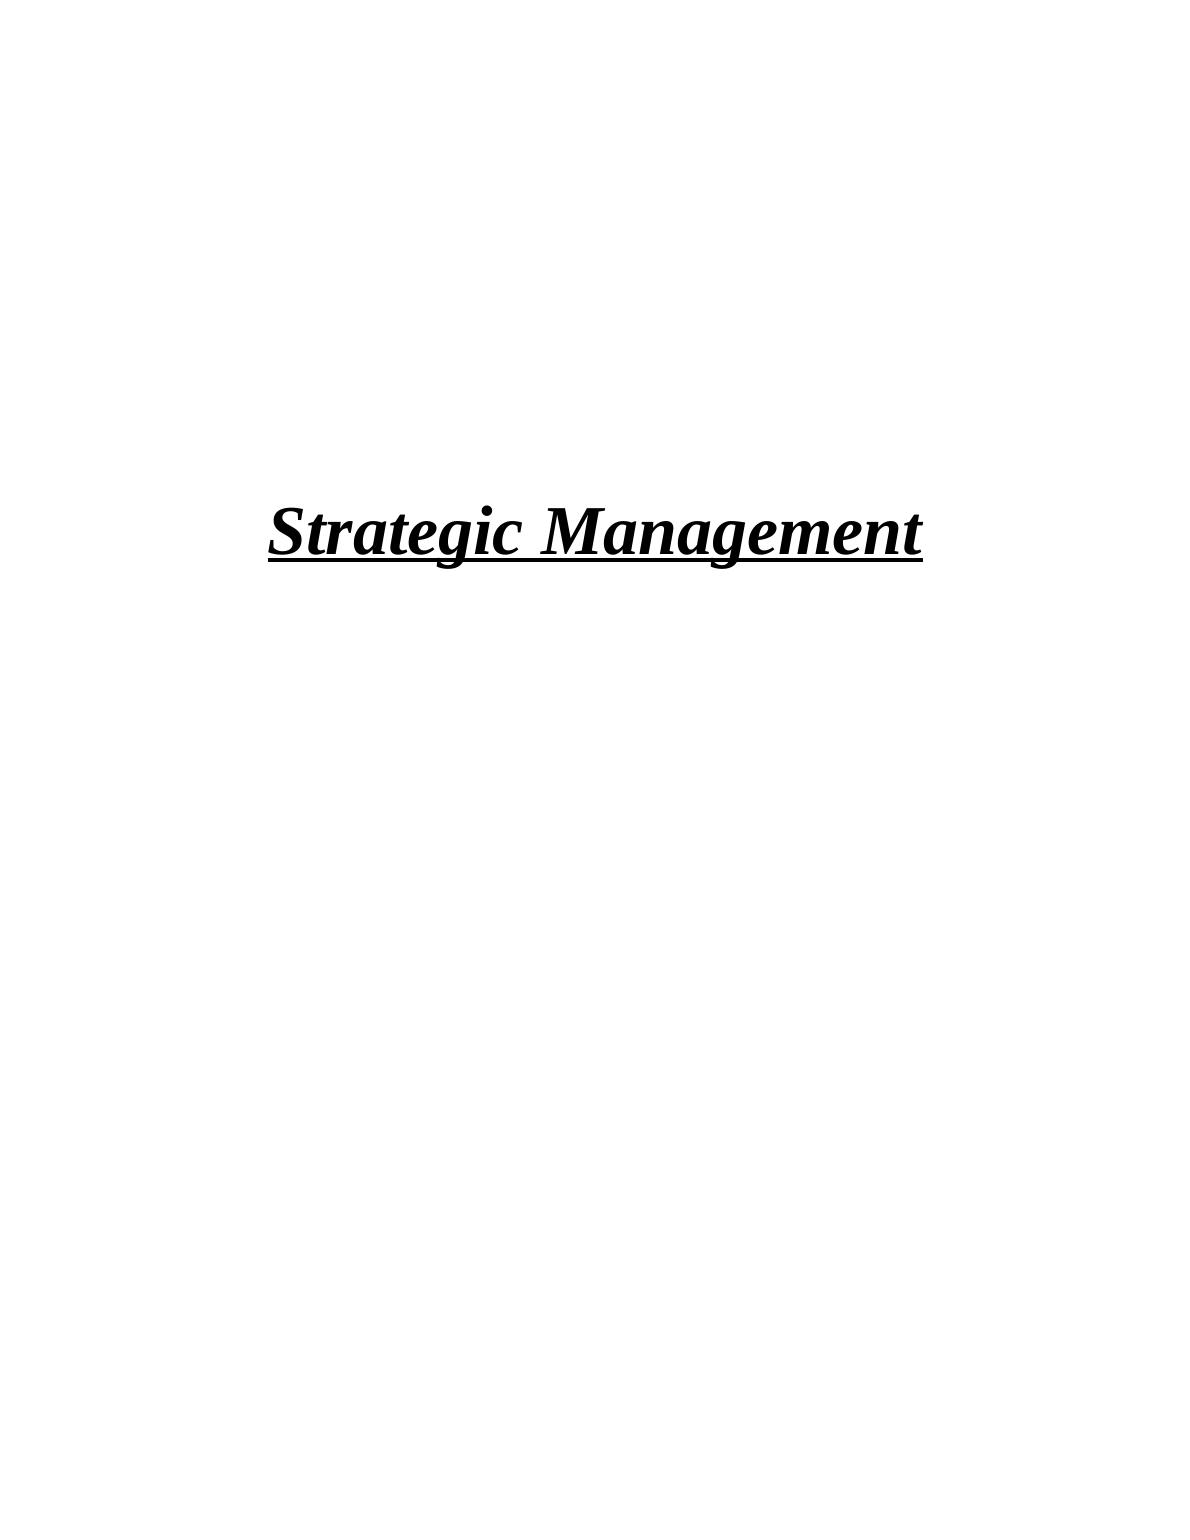 Strategic Management - British Petroleum_1